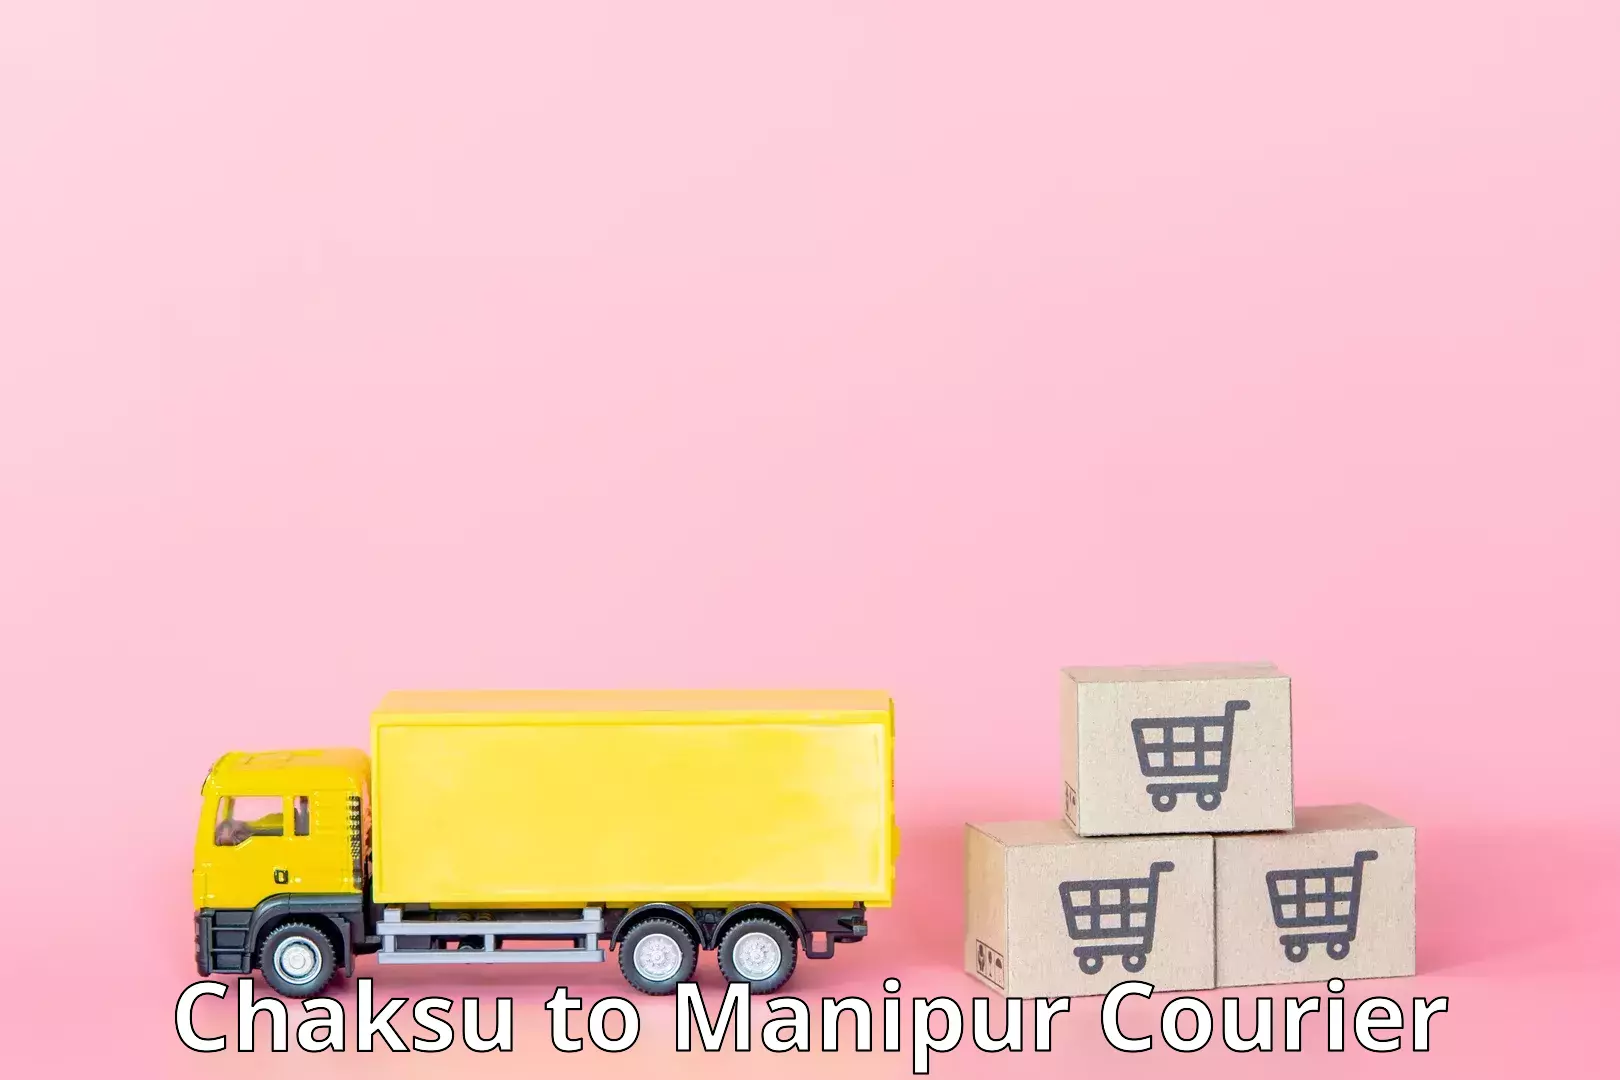 Express courier capabilities Chaksu to Kanti